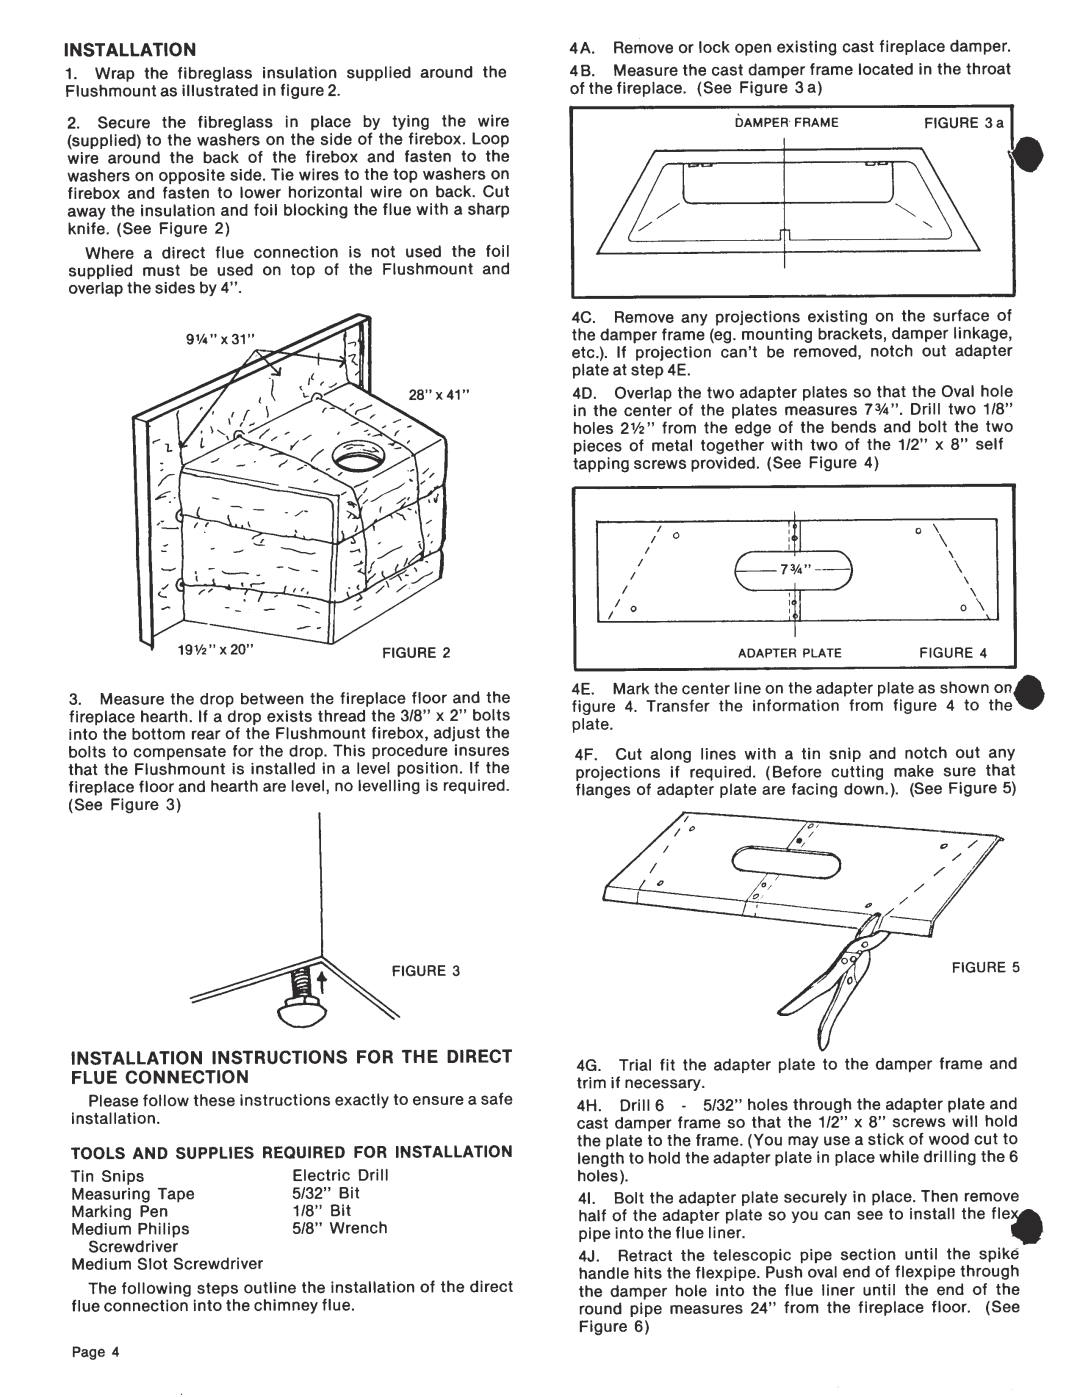 Elmira Stove Works 1700 manual 